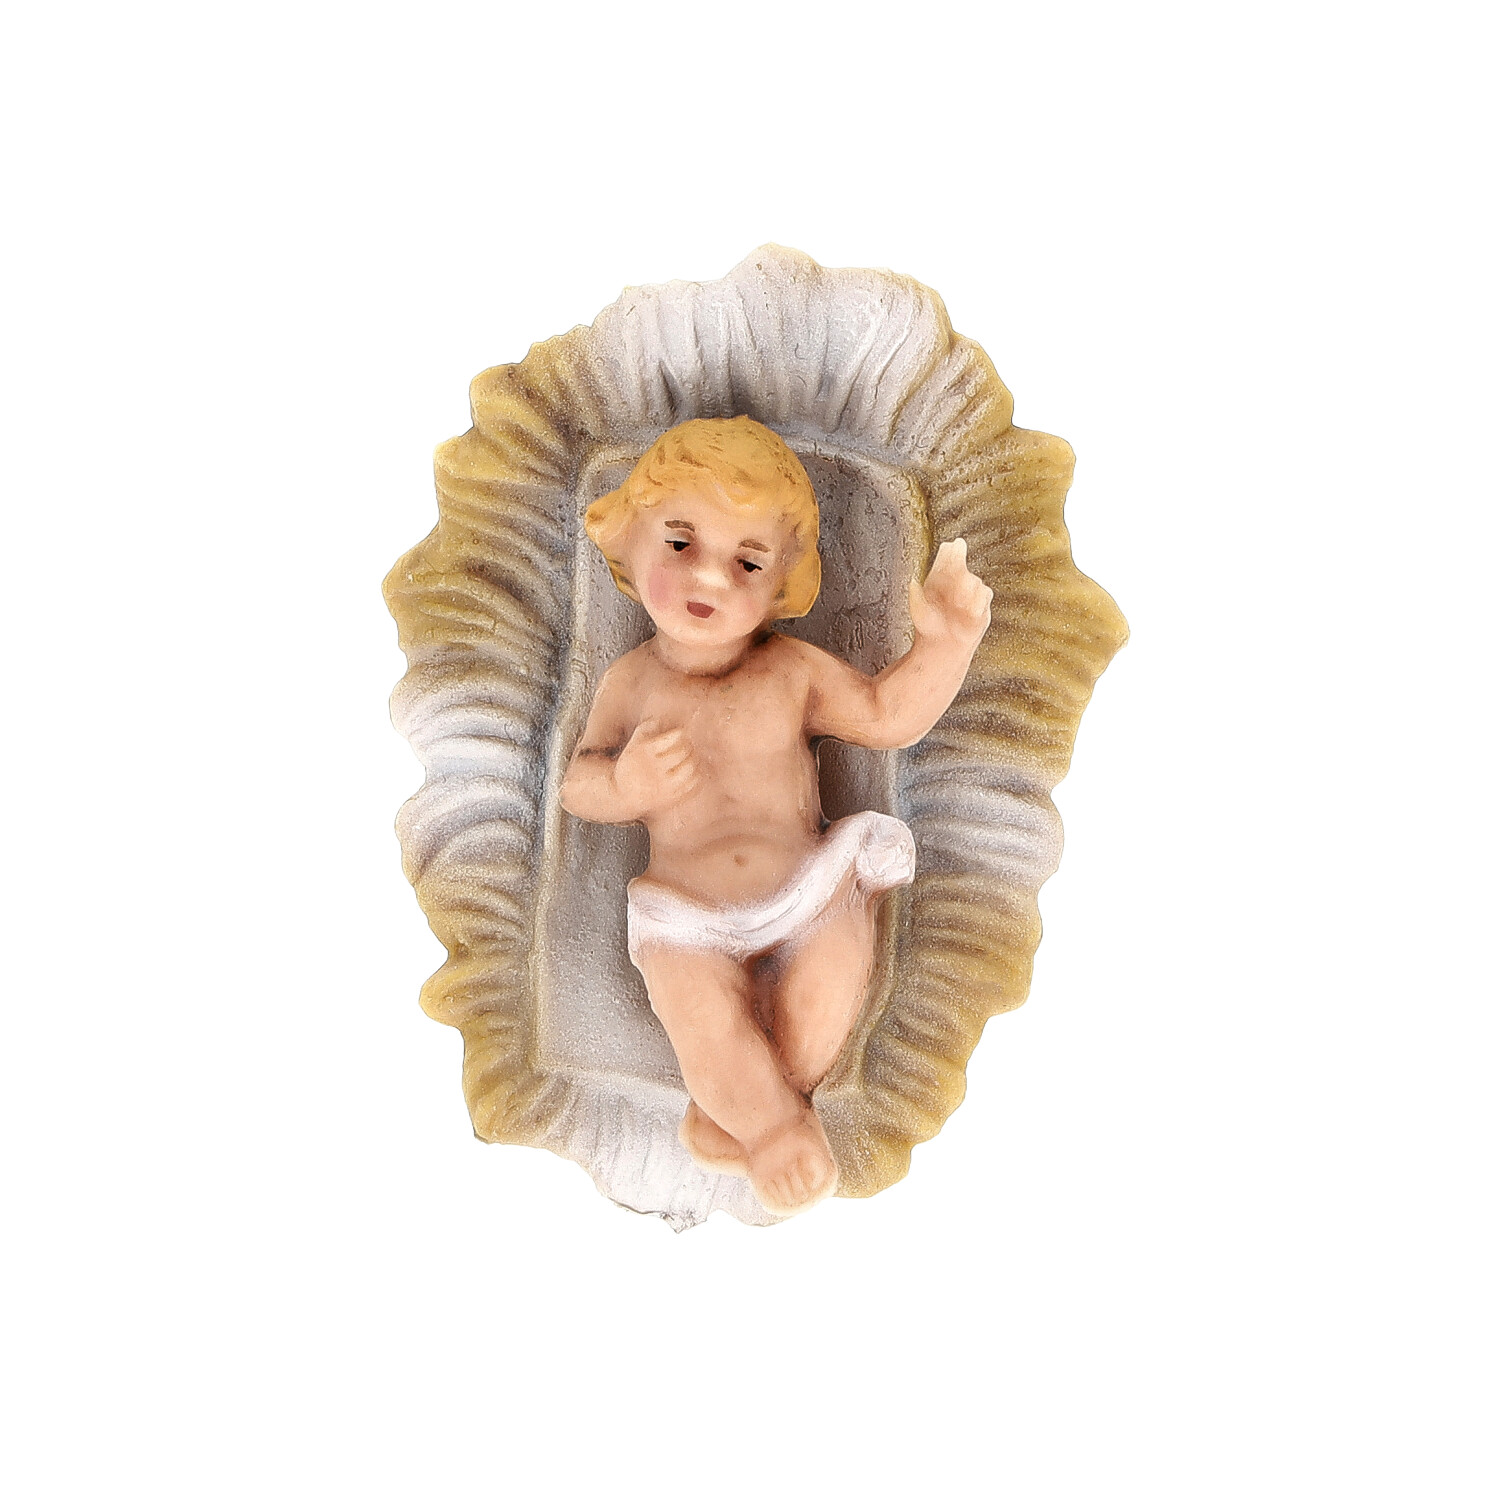 Infant Jesus in crib - Marolin Plastik - Resin Nativity figure - made in Germany